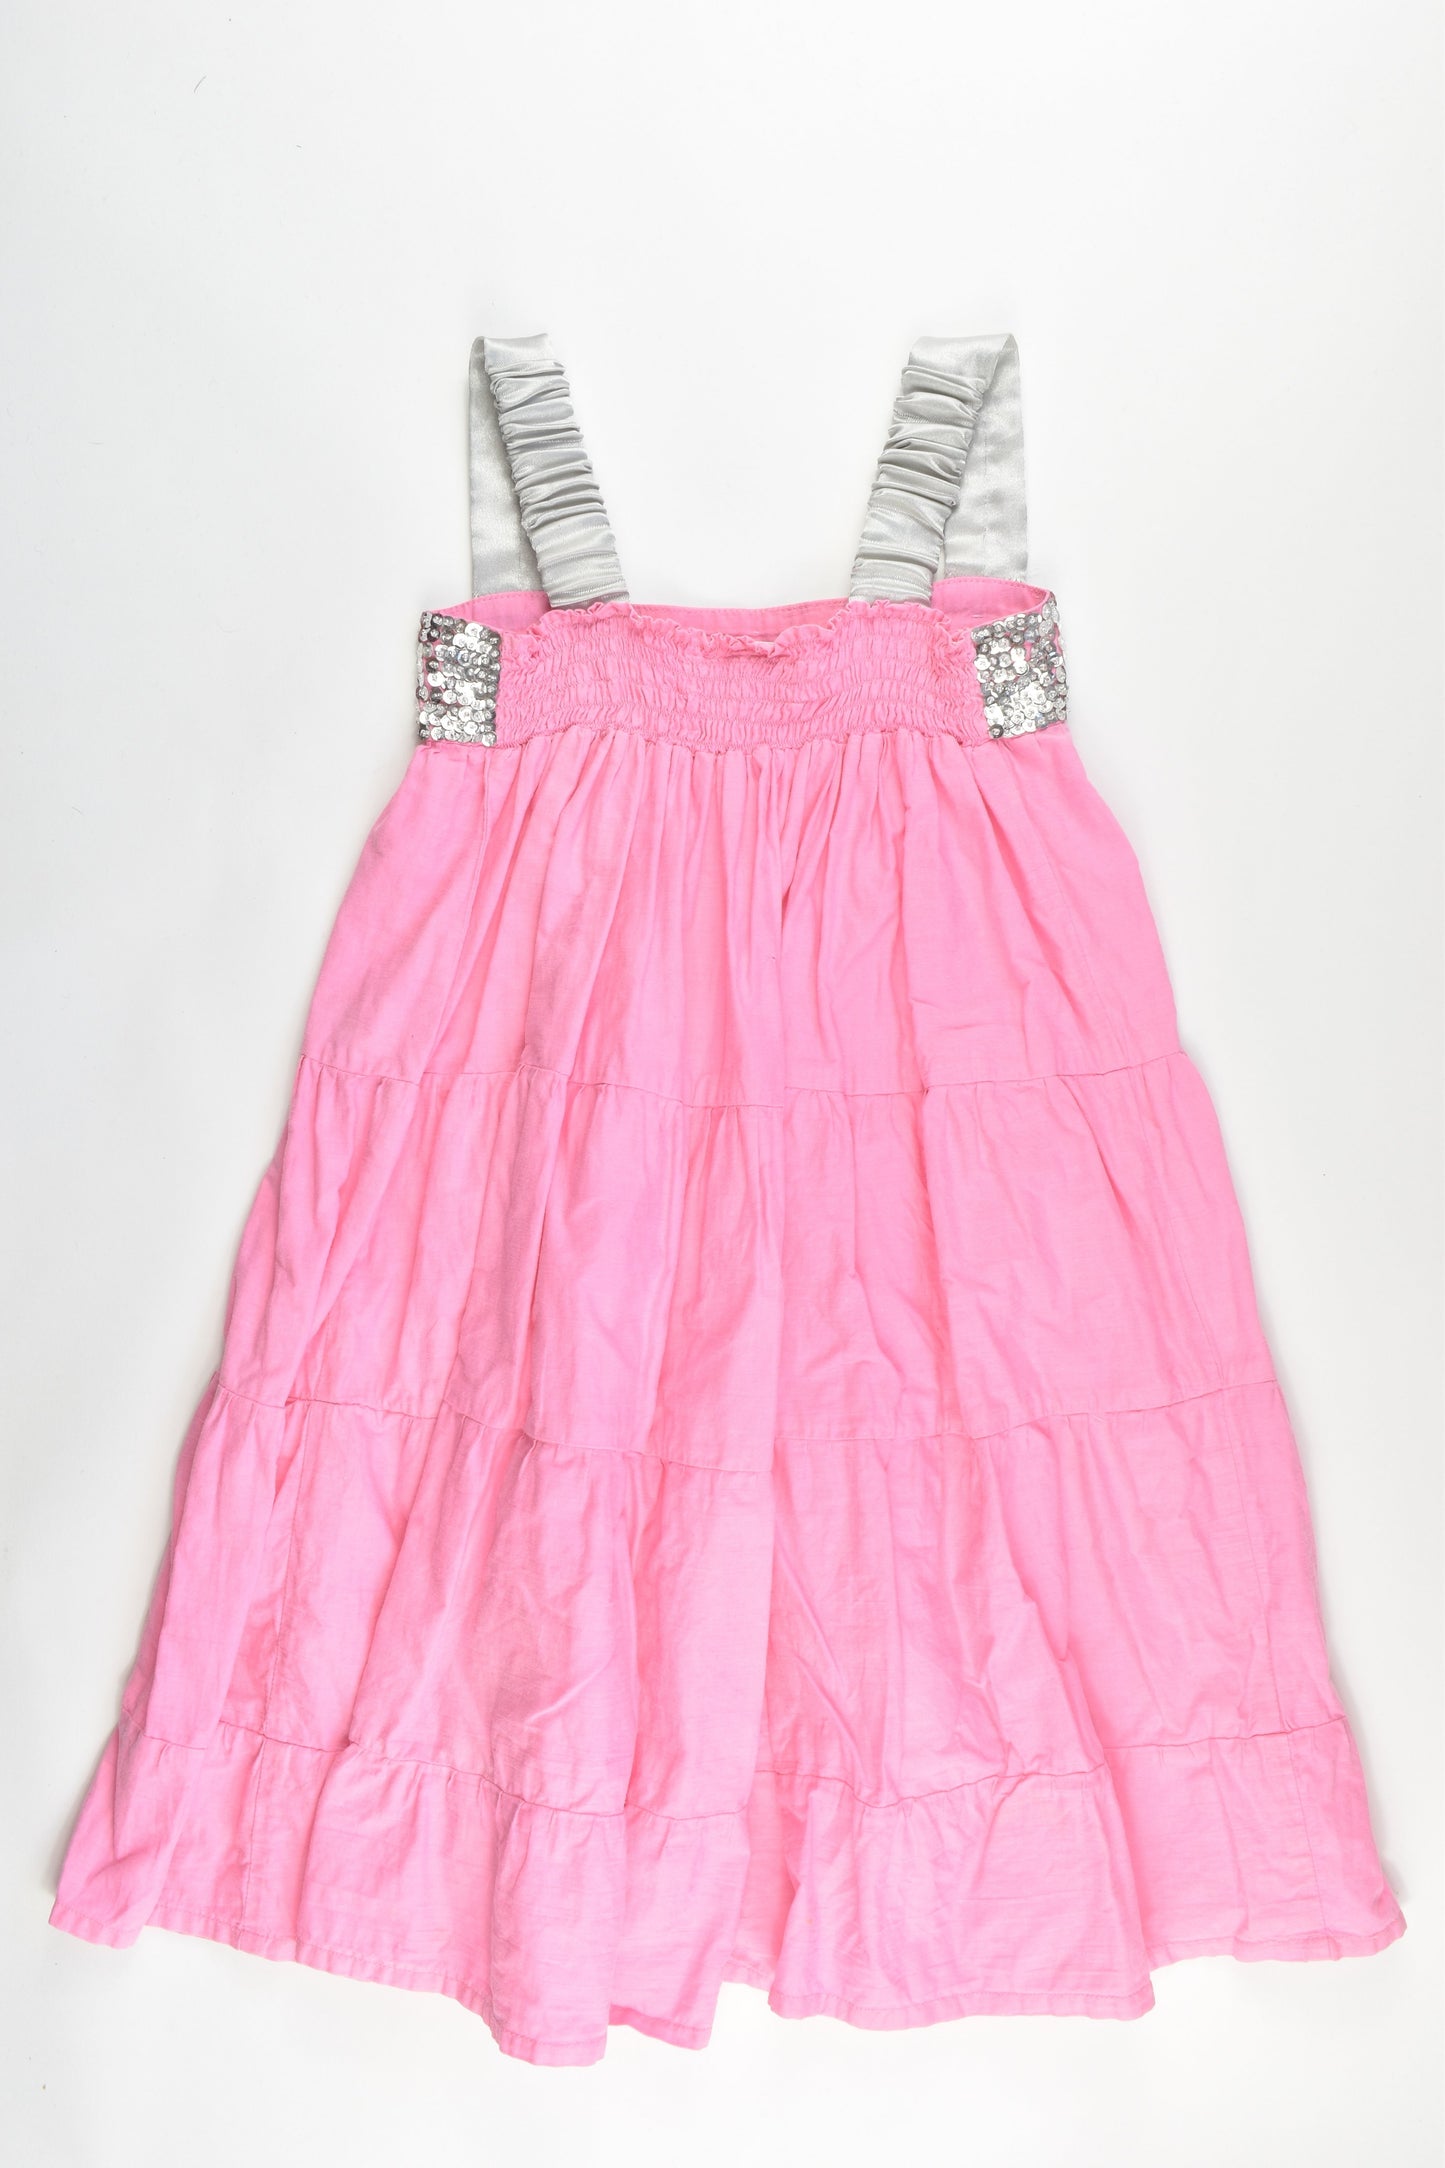 Indigo Kids Size 6/7 Dress